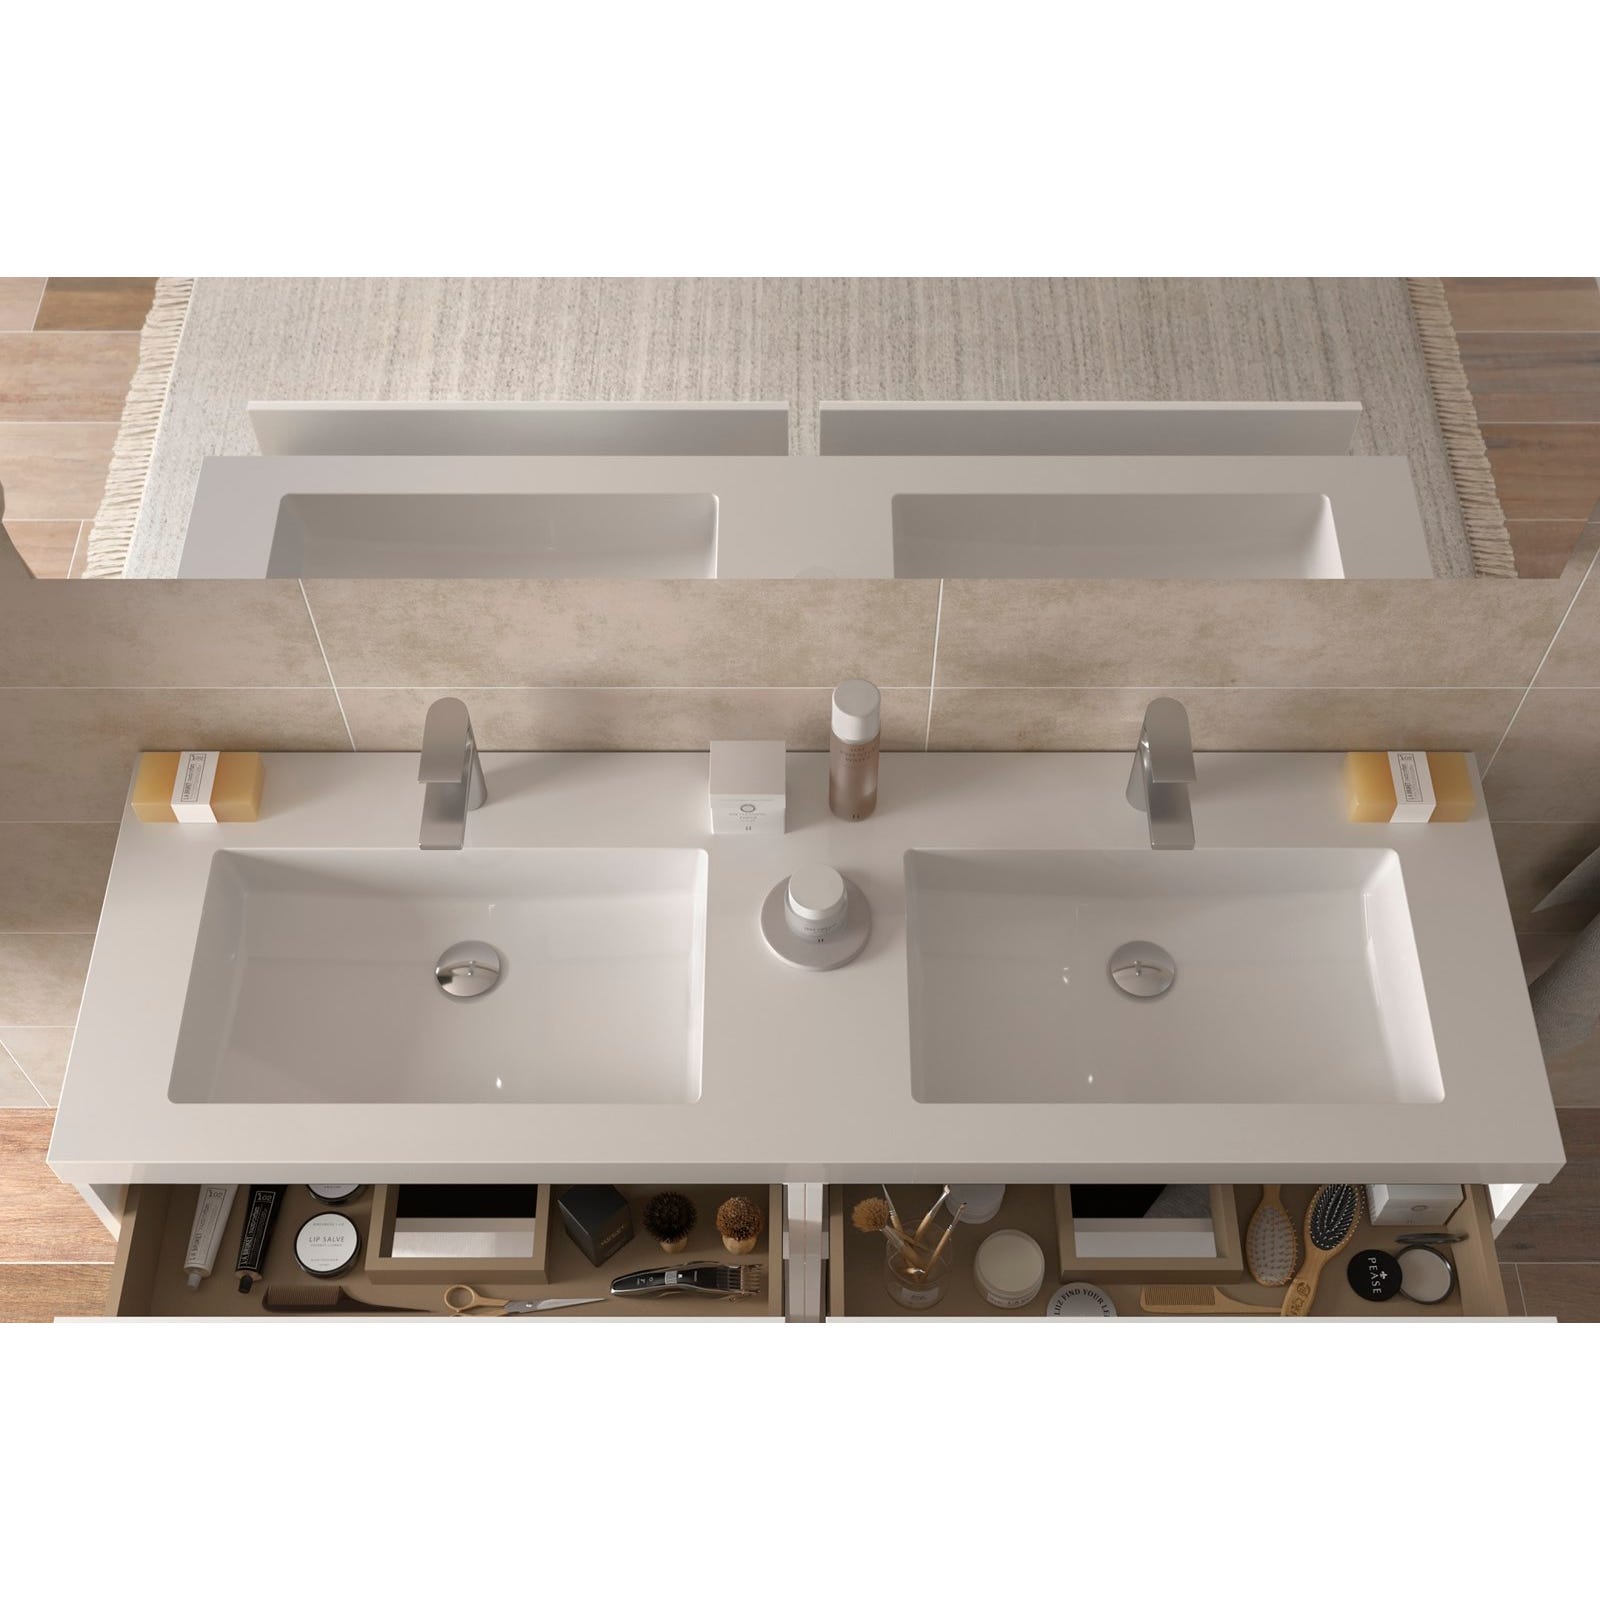 Meuble salle de bain - 140 cm - Plan double vasques charge minérale - Effet chêne brut - A suspendre - KARAIB 2